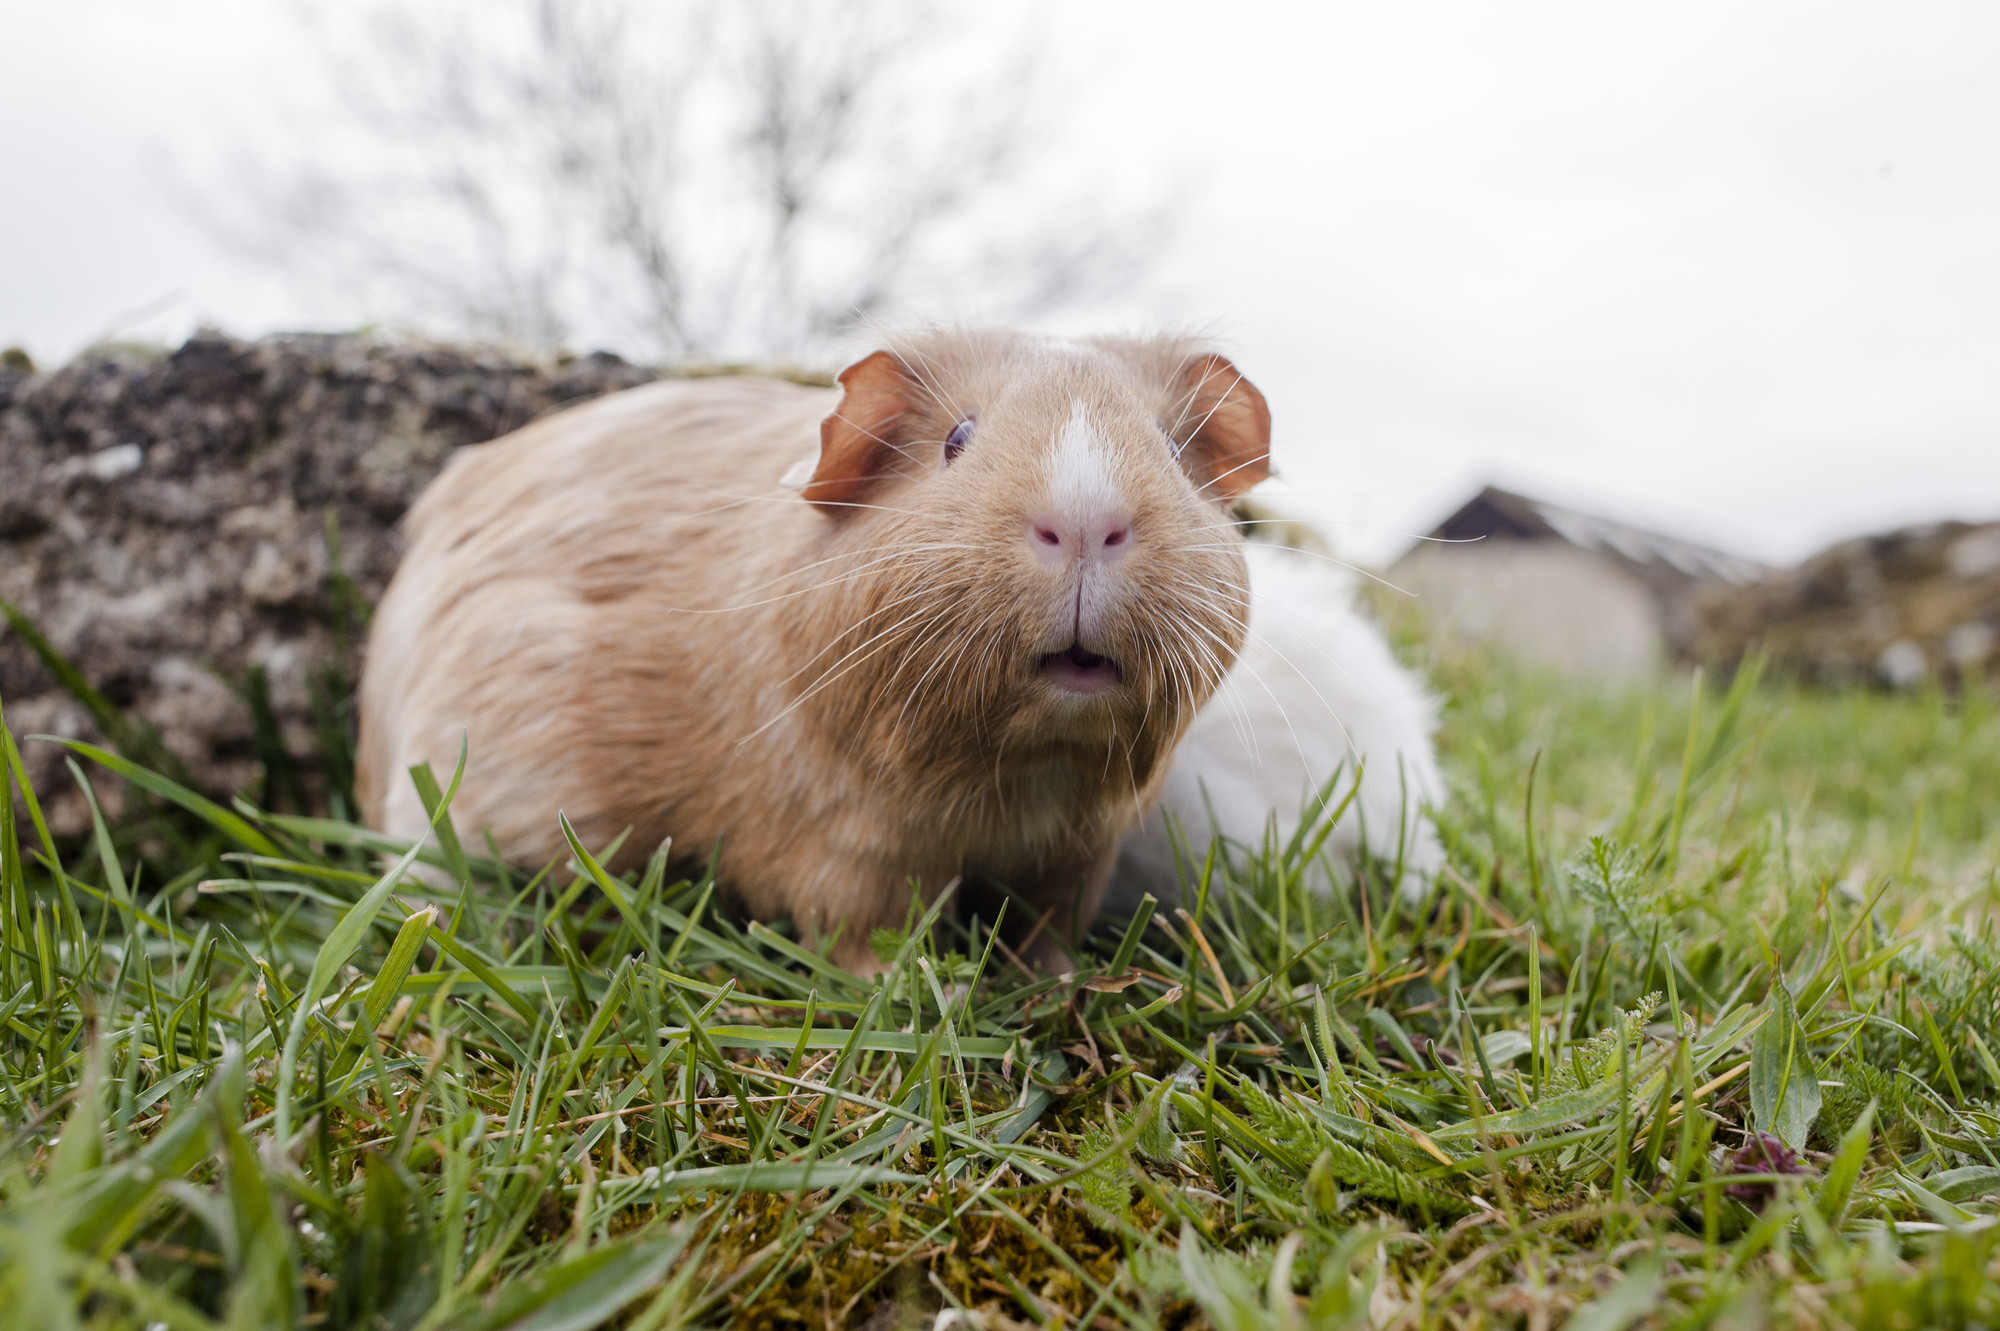 A ginger guinea pig explores the grass outdoors.